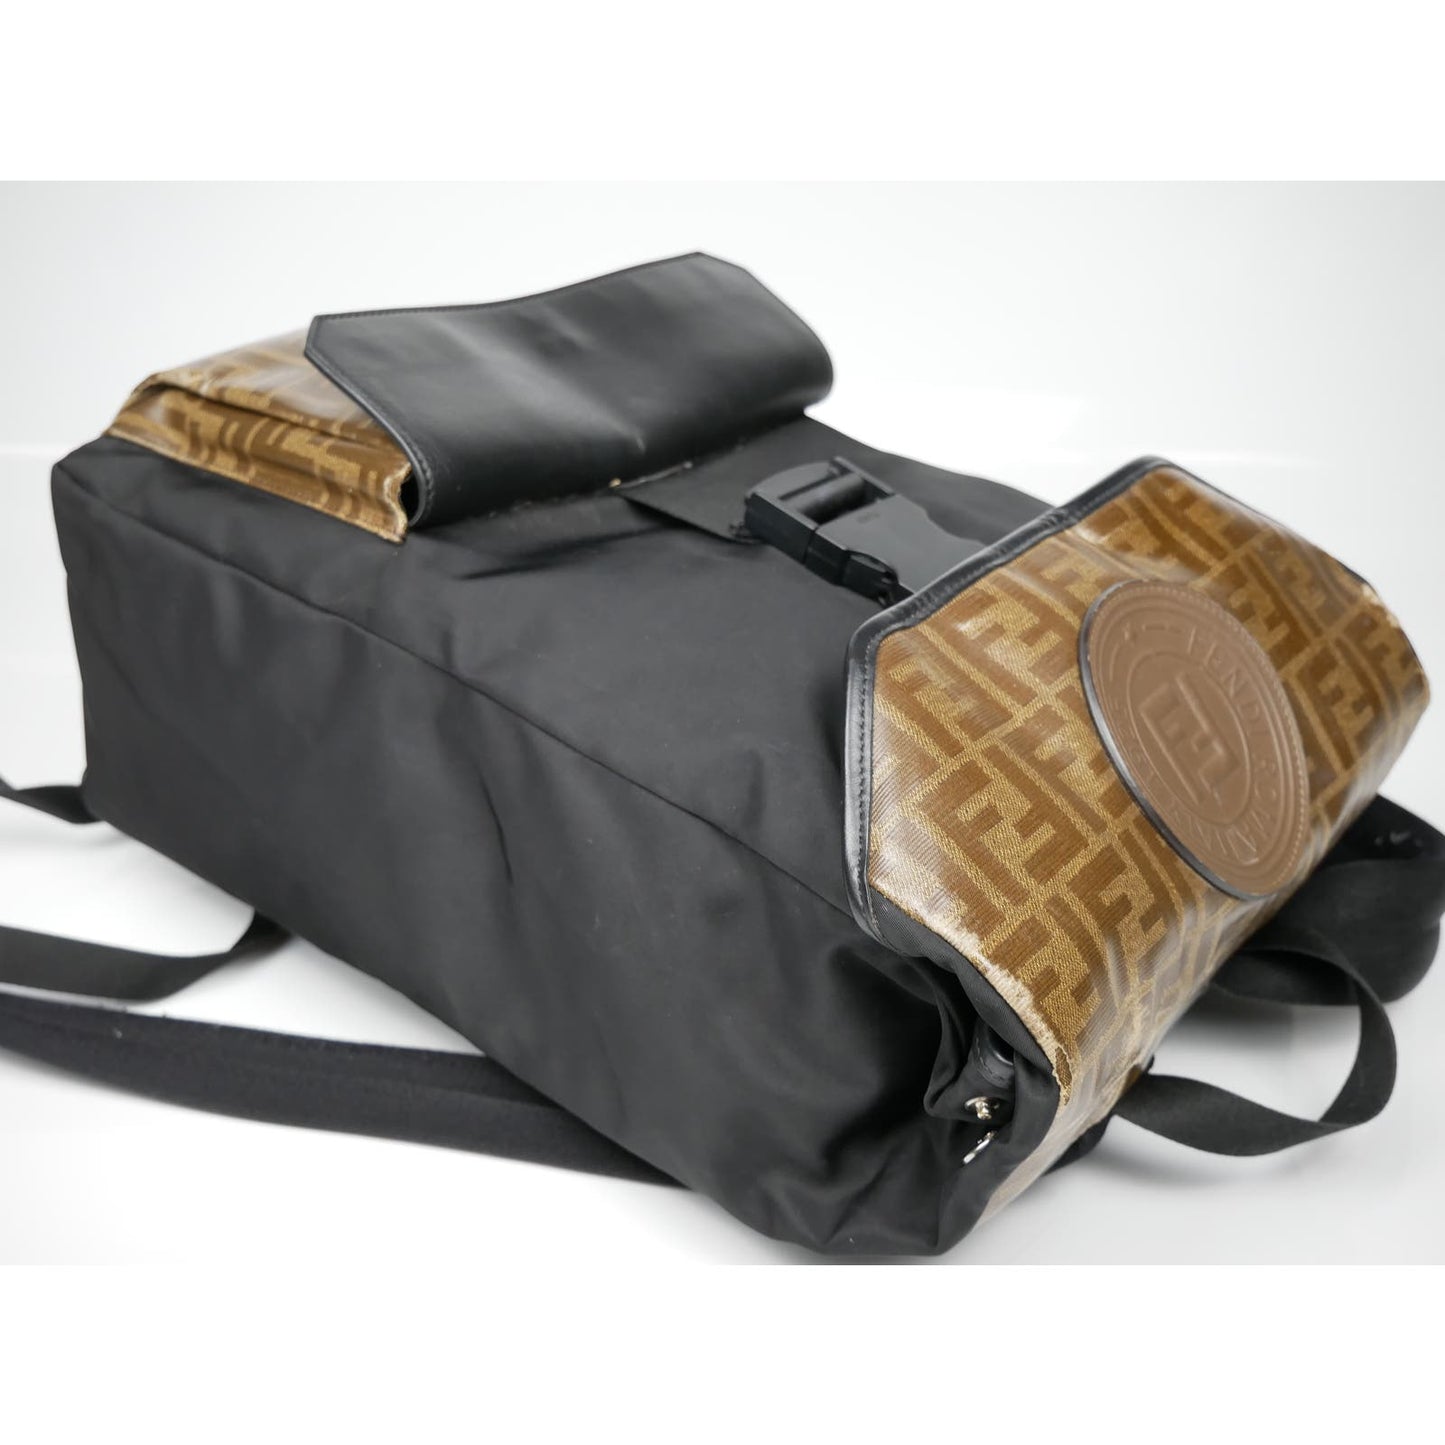 Fendi Black/Brown Zucca Backpack